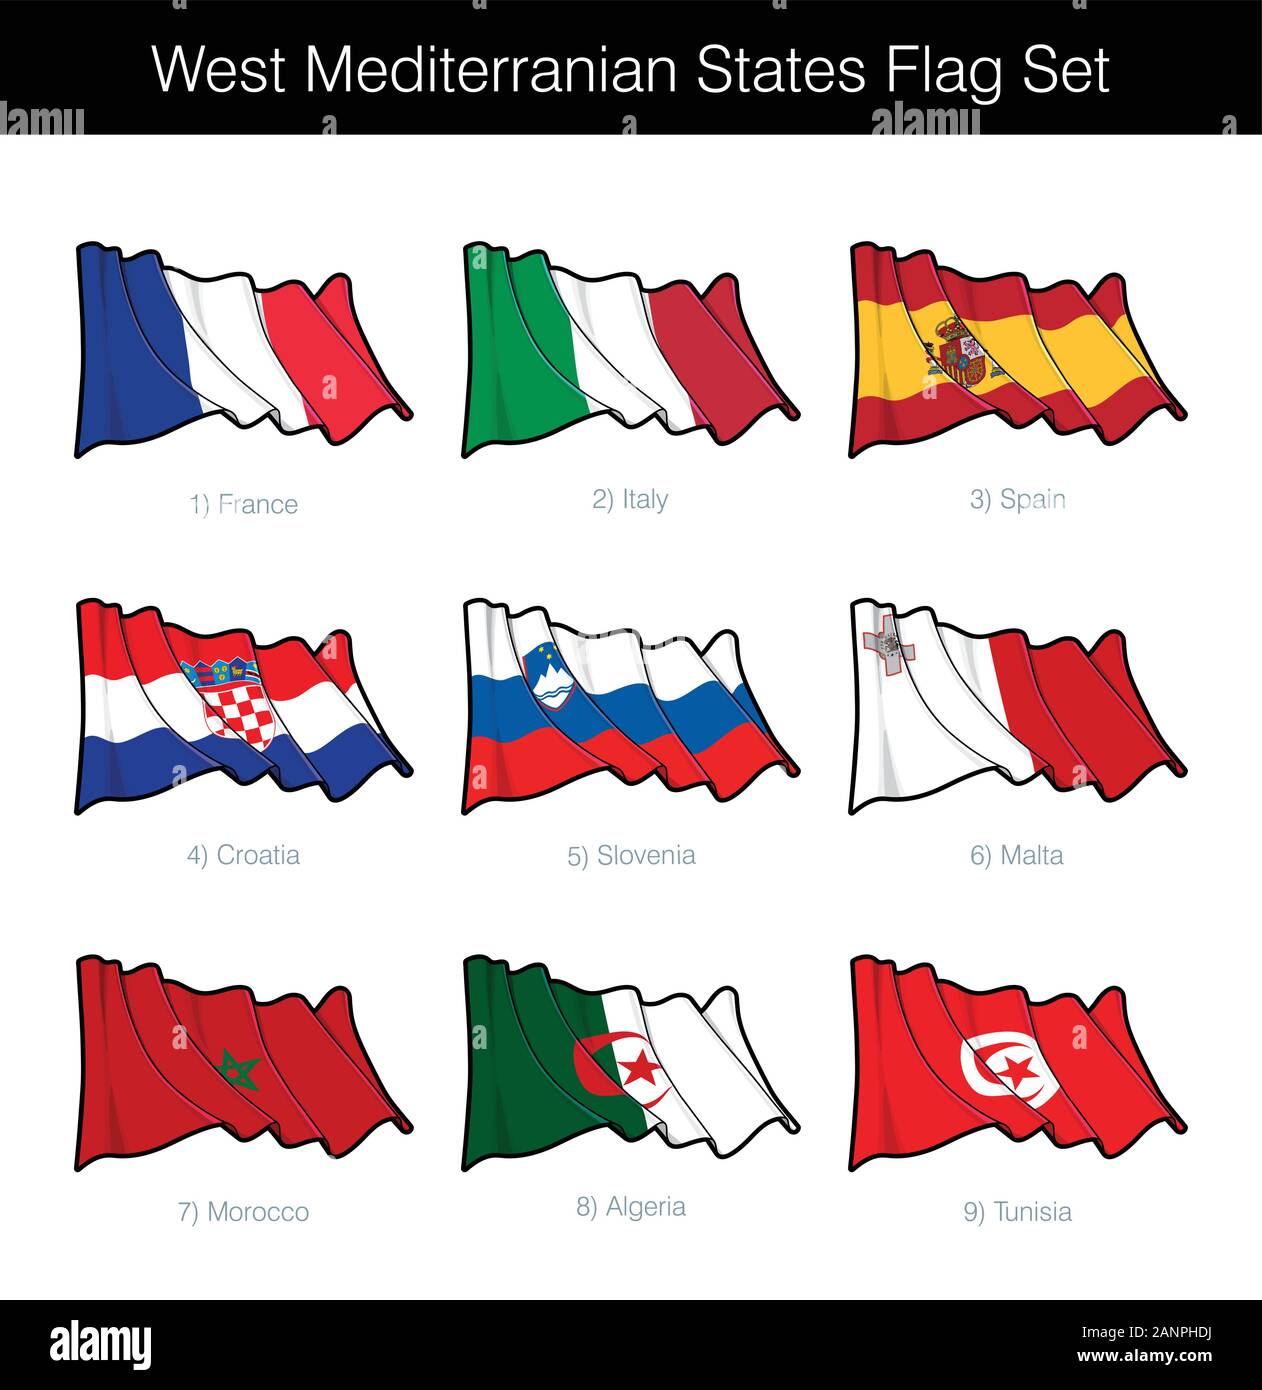 West Mittelmeerstaaten wehende Flagge gesetzt. Das Set beinhaltet die Flaggen von Frankreich, Italien, Spanien, Kroatien, Slowenien, Malta, Marokko, Algerien n Tunesien. V Stock Vektor